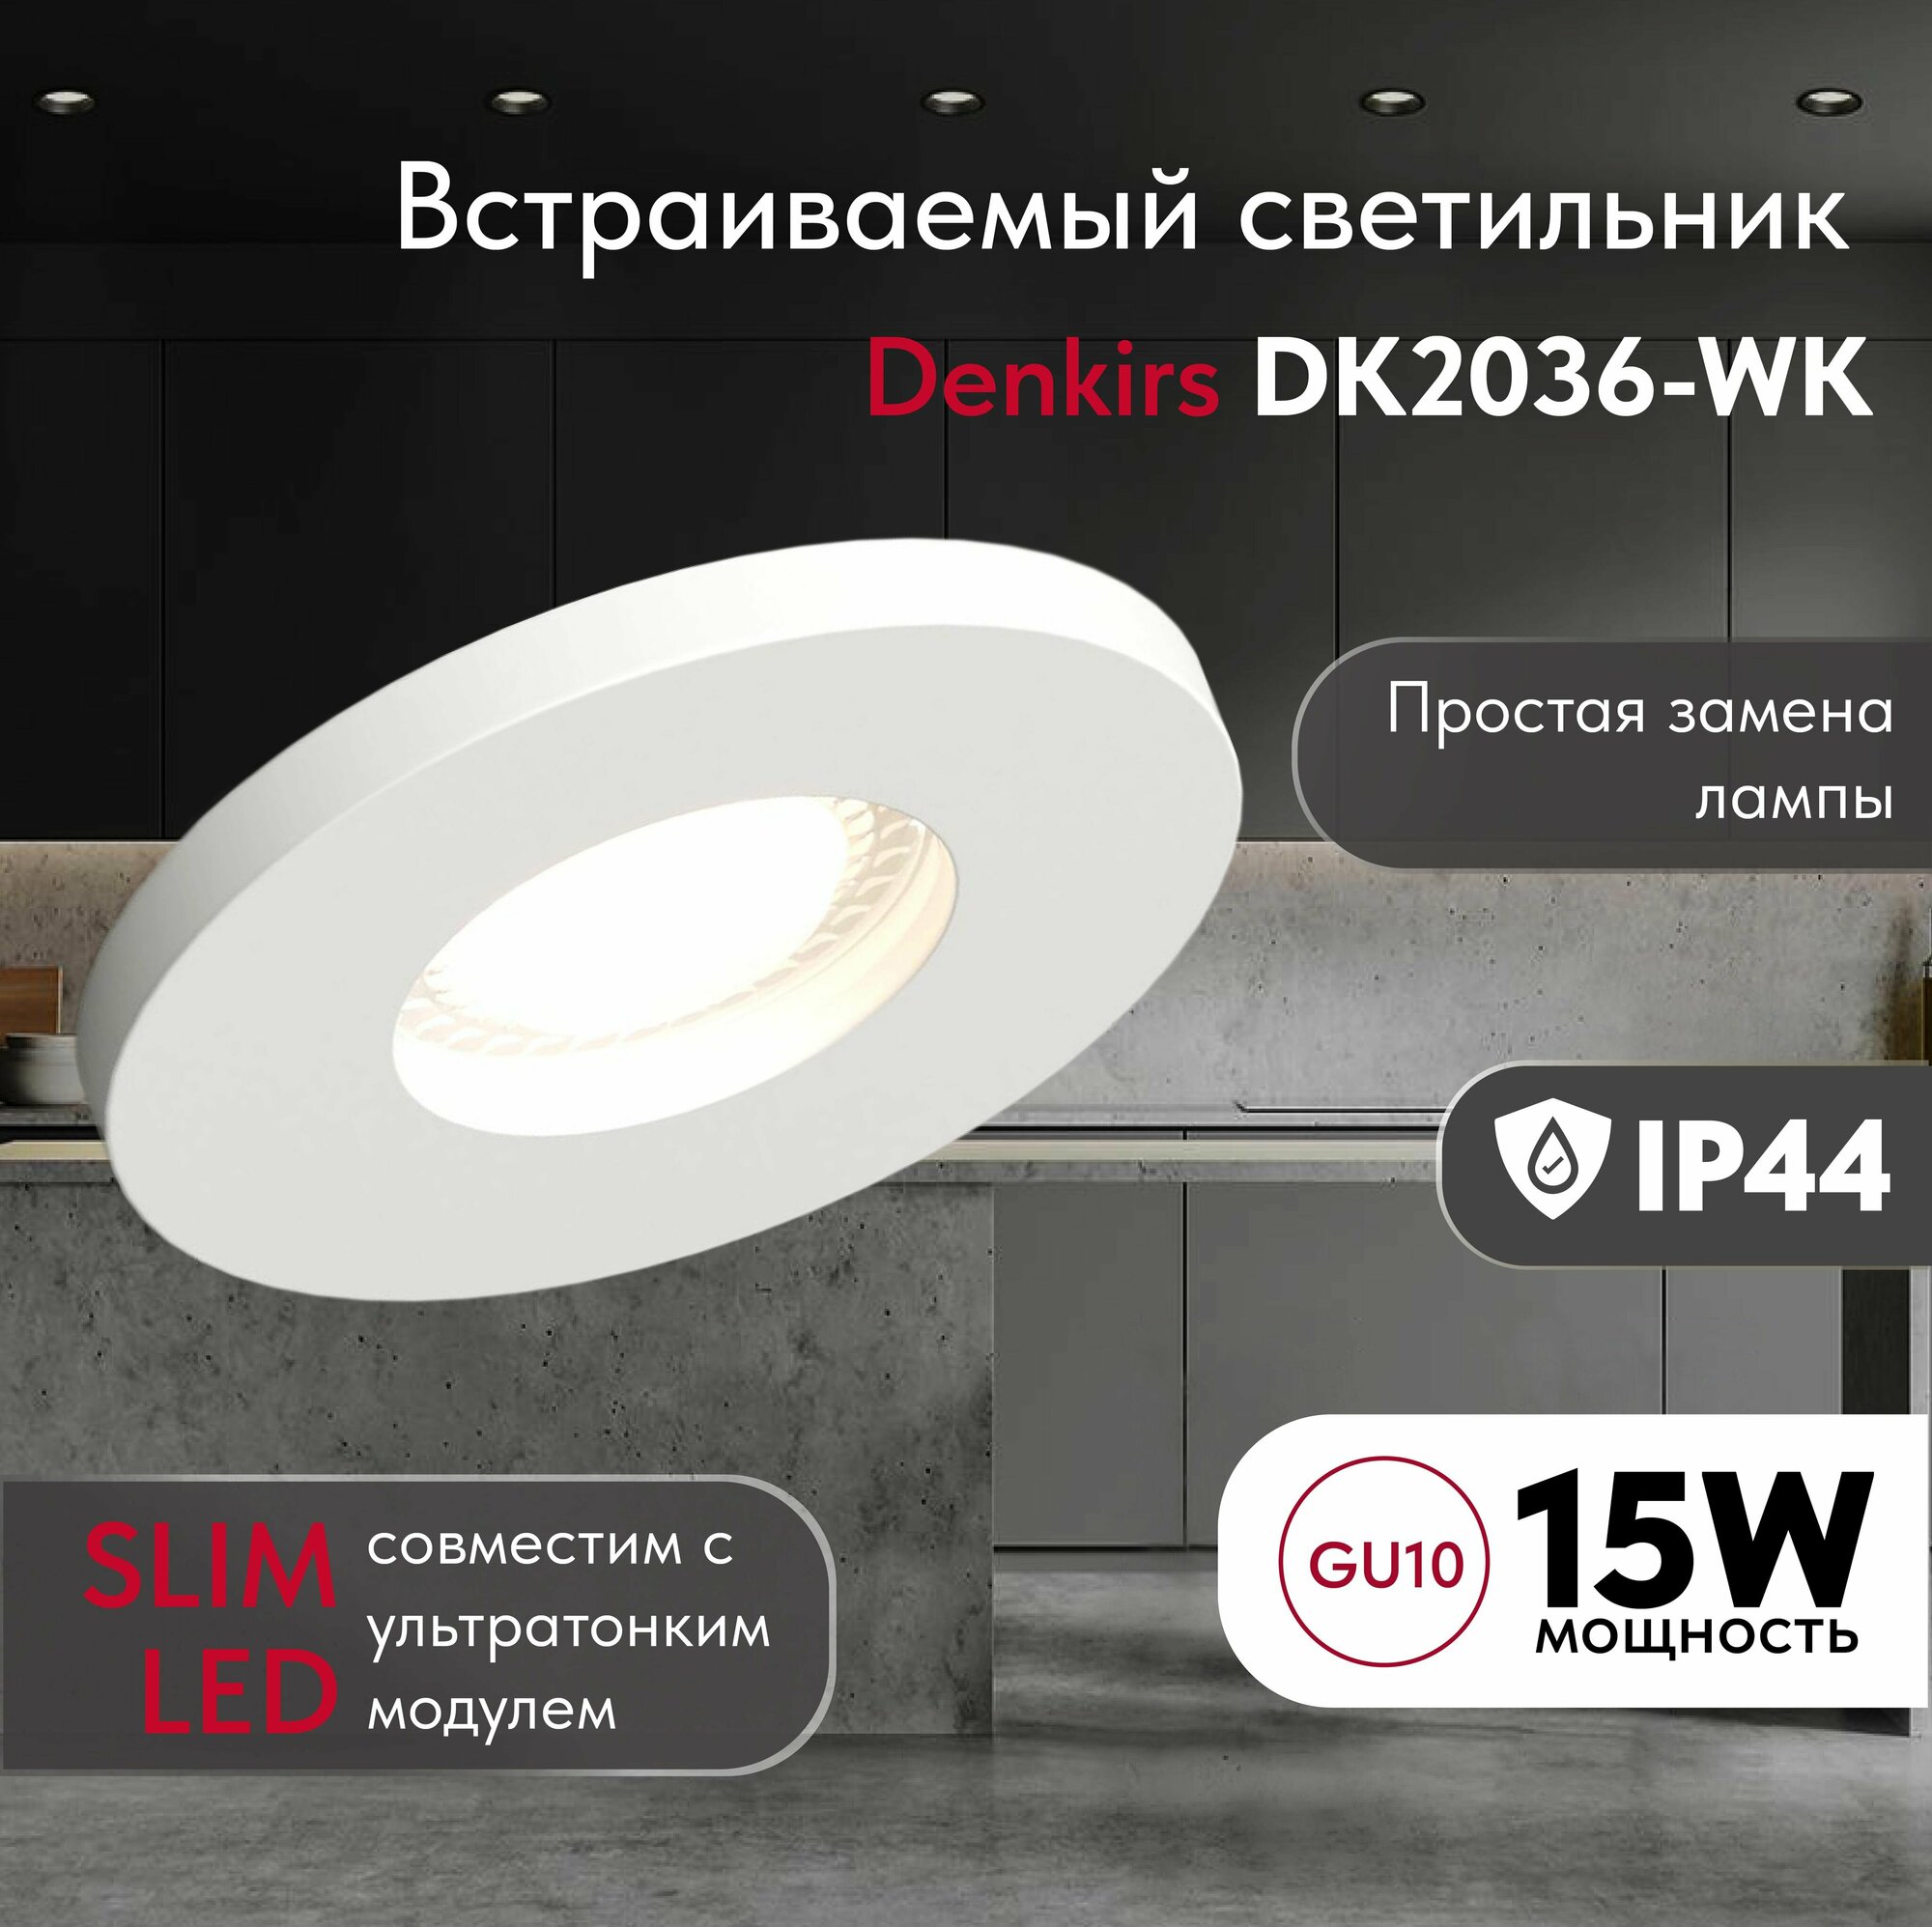 Светильник потолочный встраиваемый, влагозащищённый DENKIRS DK2036-WH, IP 44, до 15 Вт, GU10, LED, белый, алюминий